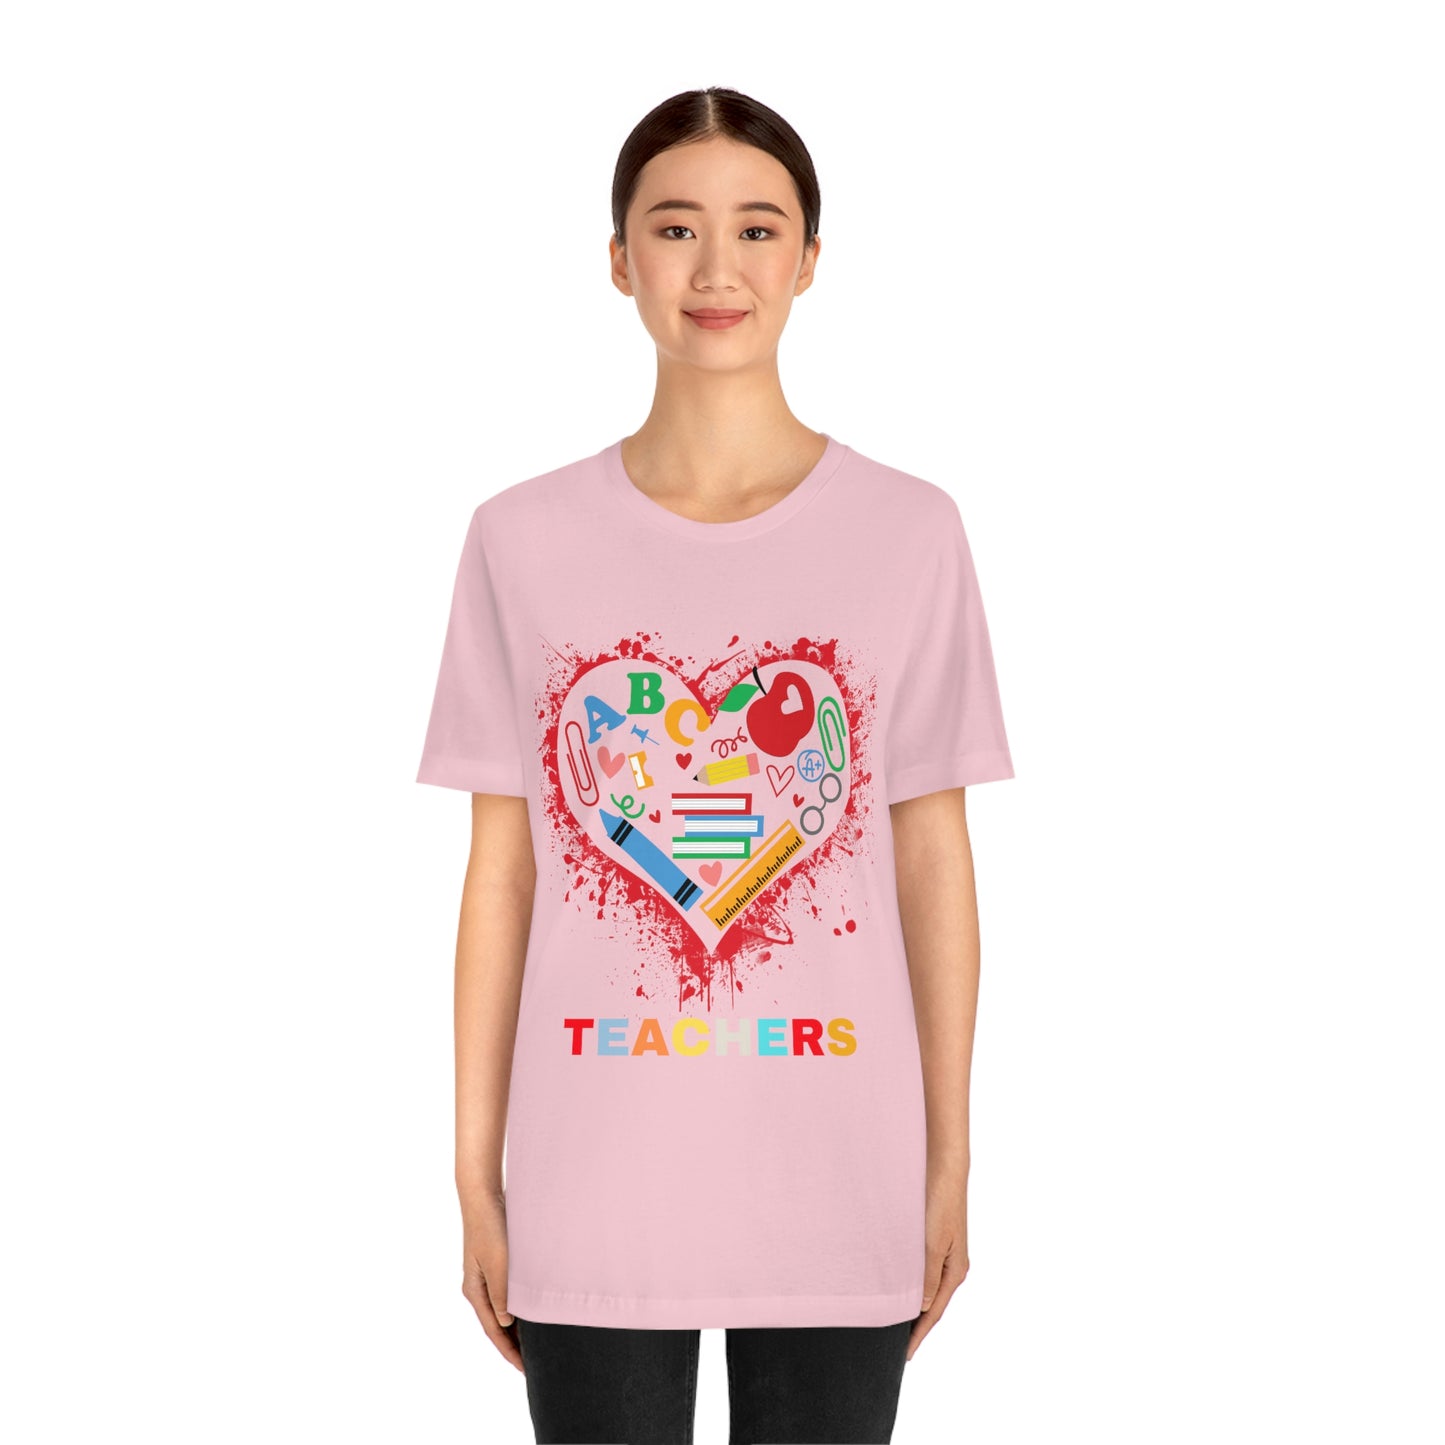 Love Teachers Shirt - Teacher Appreciation Shirt